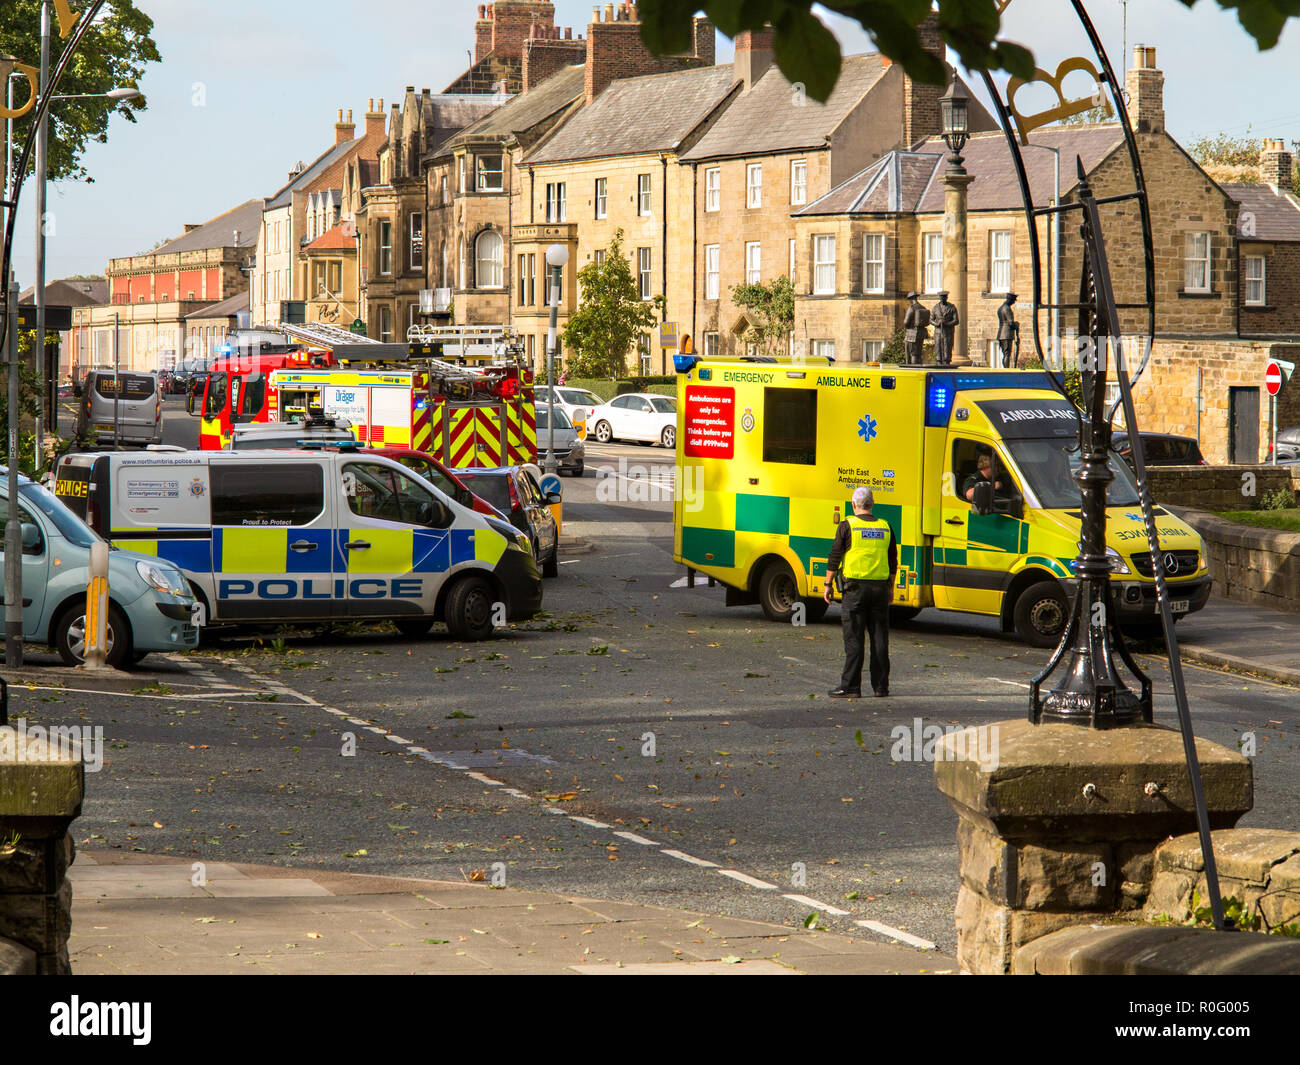 Les services d'urgence et de police incendie ambulance paramedics assister à un accident de la circulation à Alnwick Northumberland England UK Banque D'Images